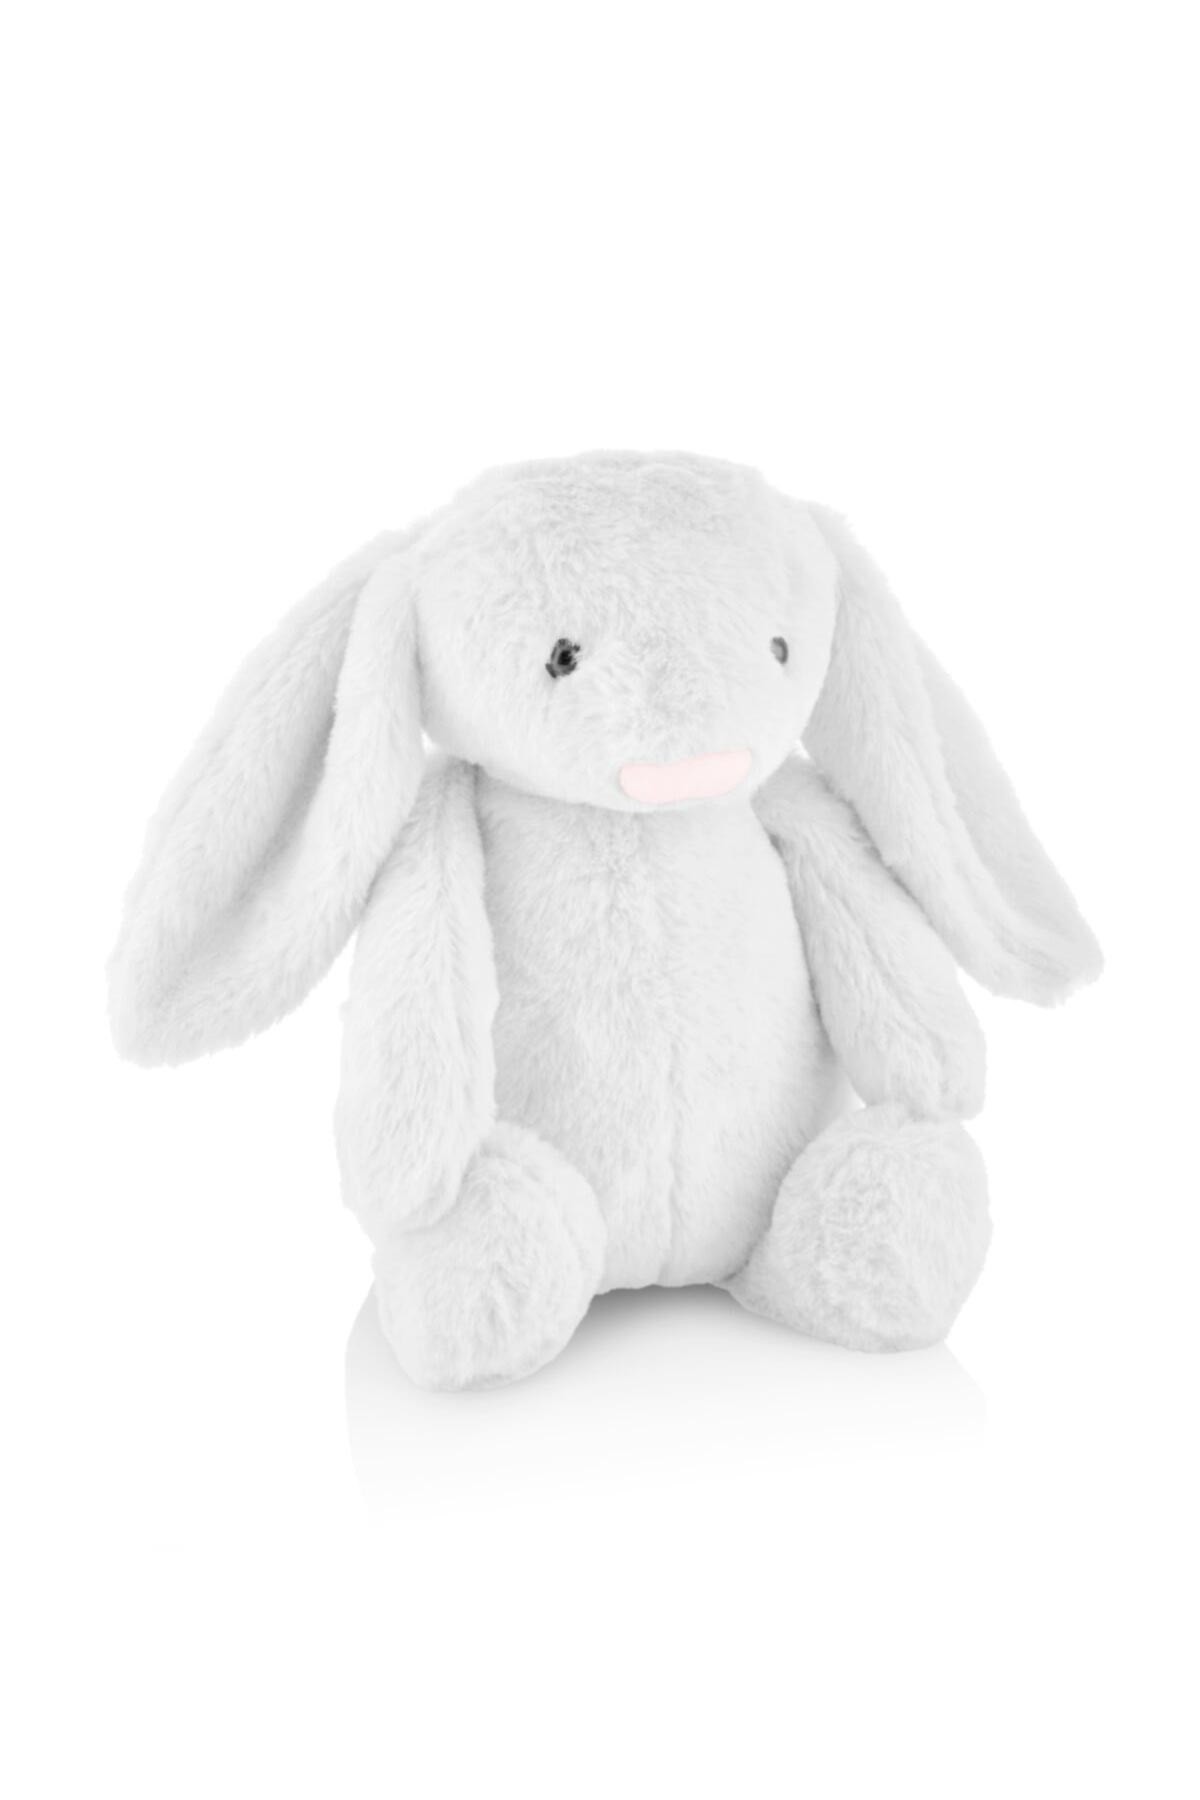 Babyjem Uyku Arkadaşım Tavşan Beyaz 44cm Beyaz